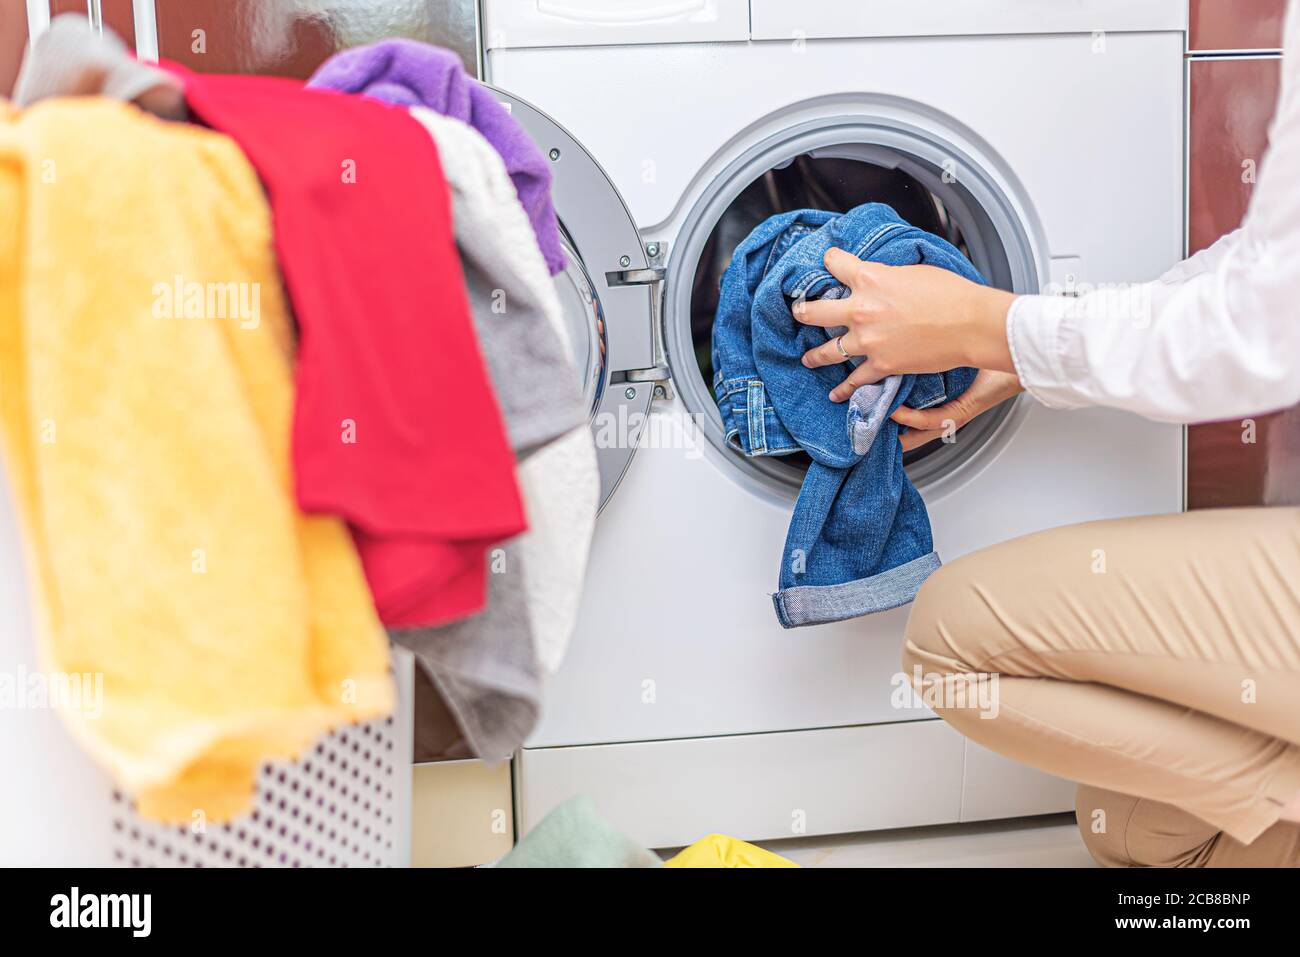 Wäscherei Waschmaschine Waschgang reinigen Reiniger tragen Kleider casual  Frottee, Frottee innen Farbe Farbe rot gelb grün Stockfotografie - Alamy